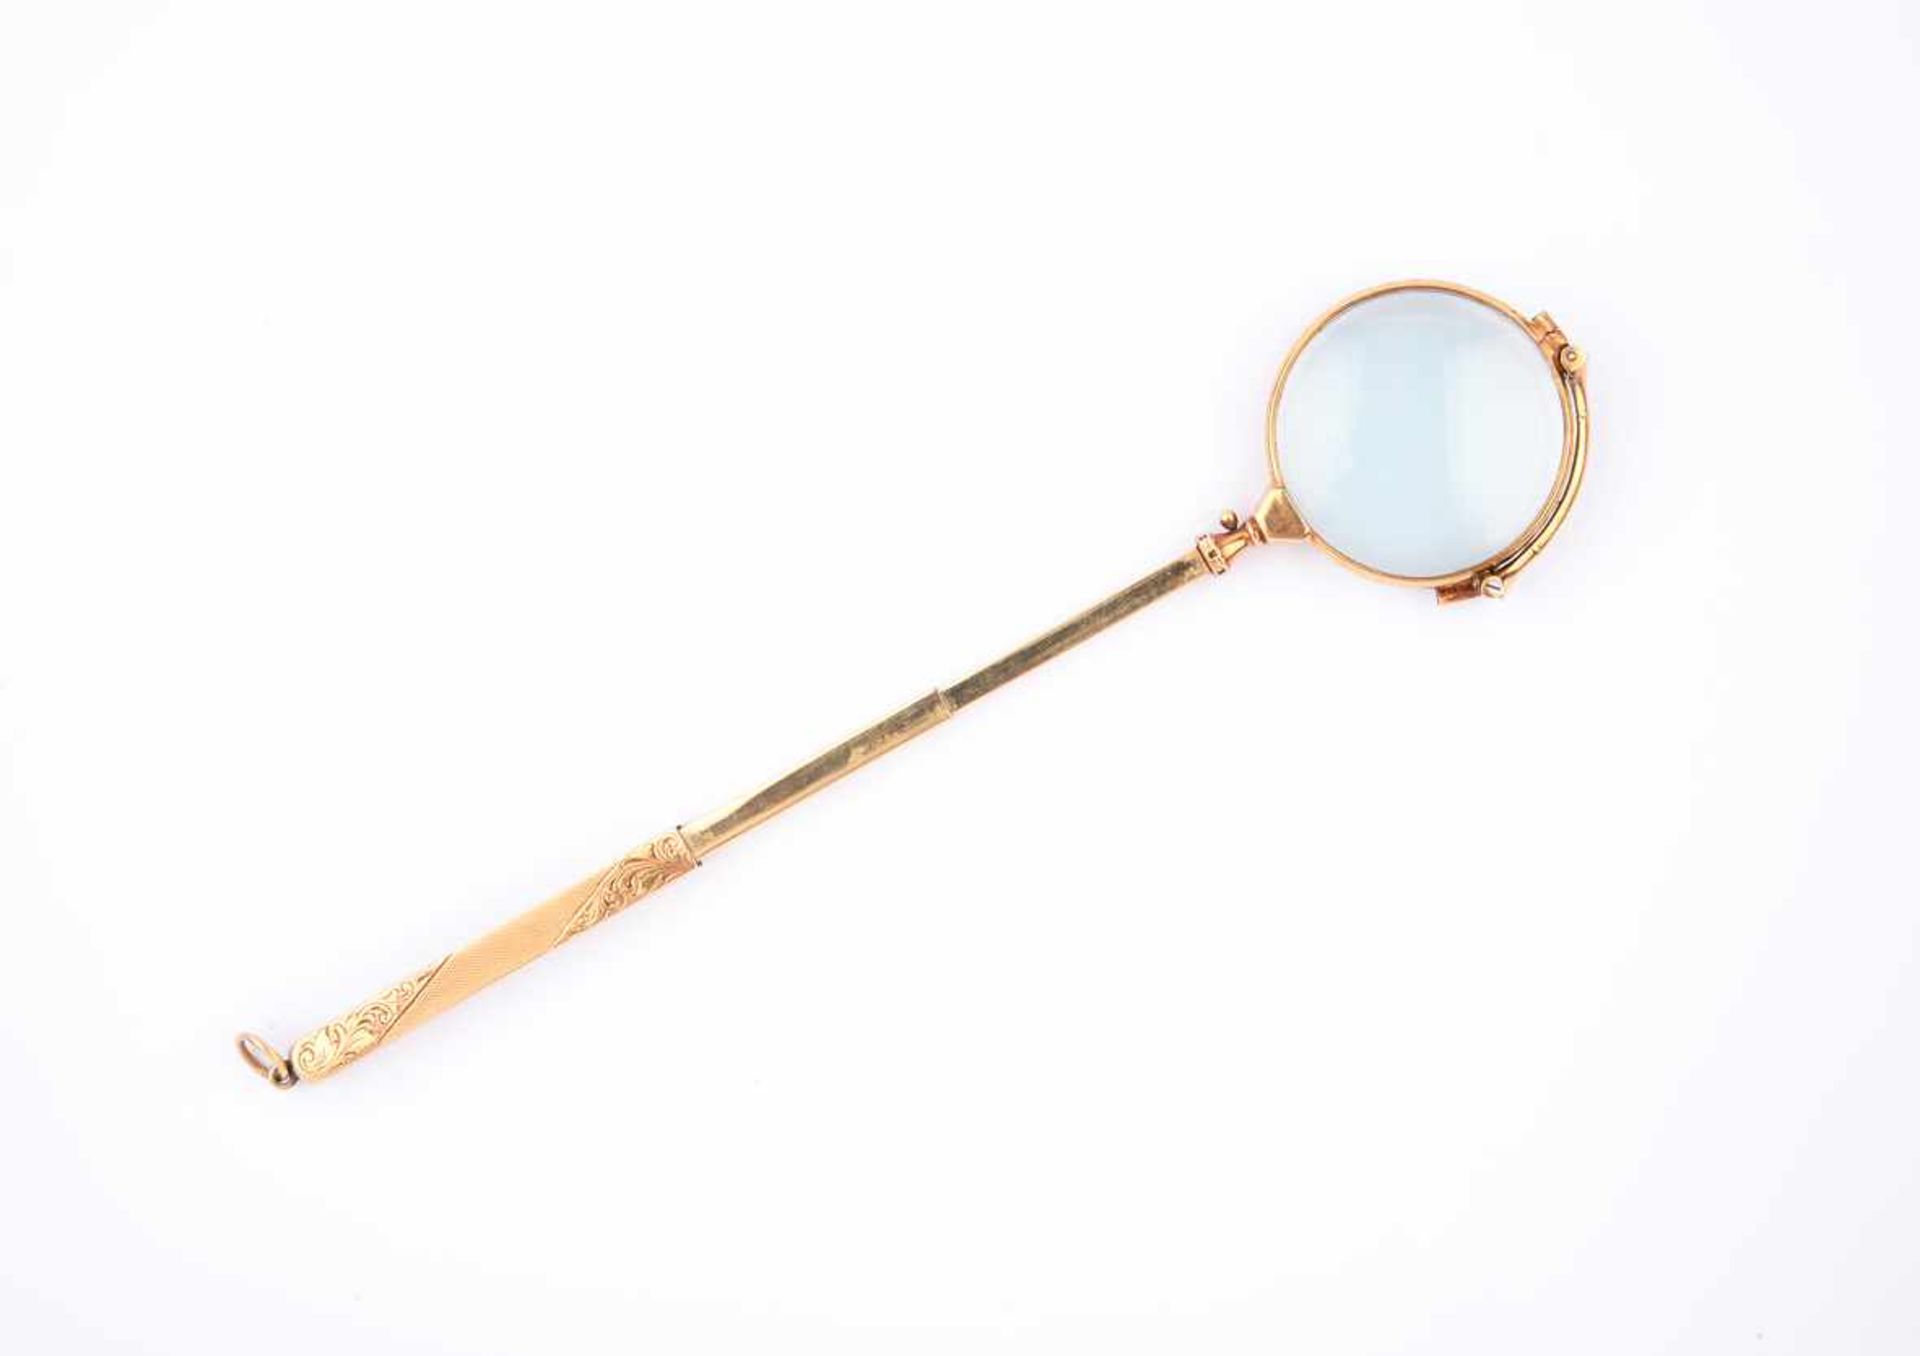 Antike Lorgnette, Theaterbrille. Jugendstil, Gold 585, fein graviert. Maße ca. 12 x 4,5cm, Gewicht - Bild 4 aus 5